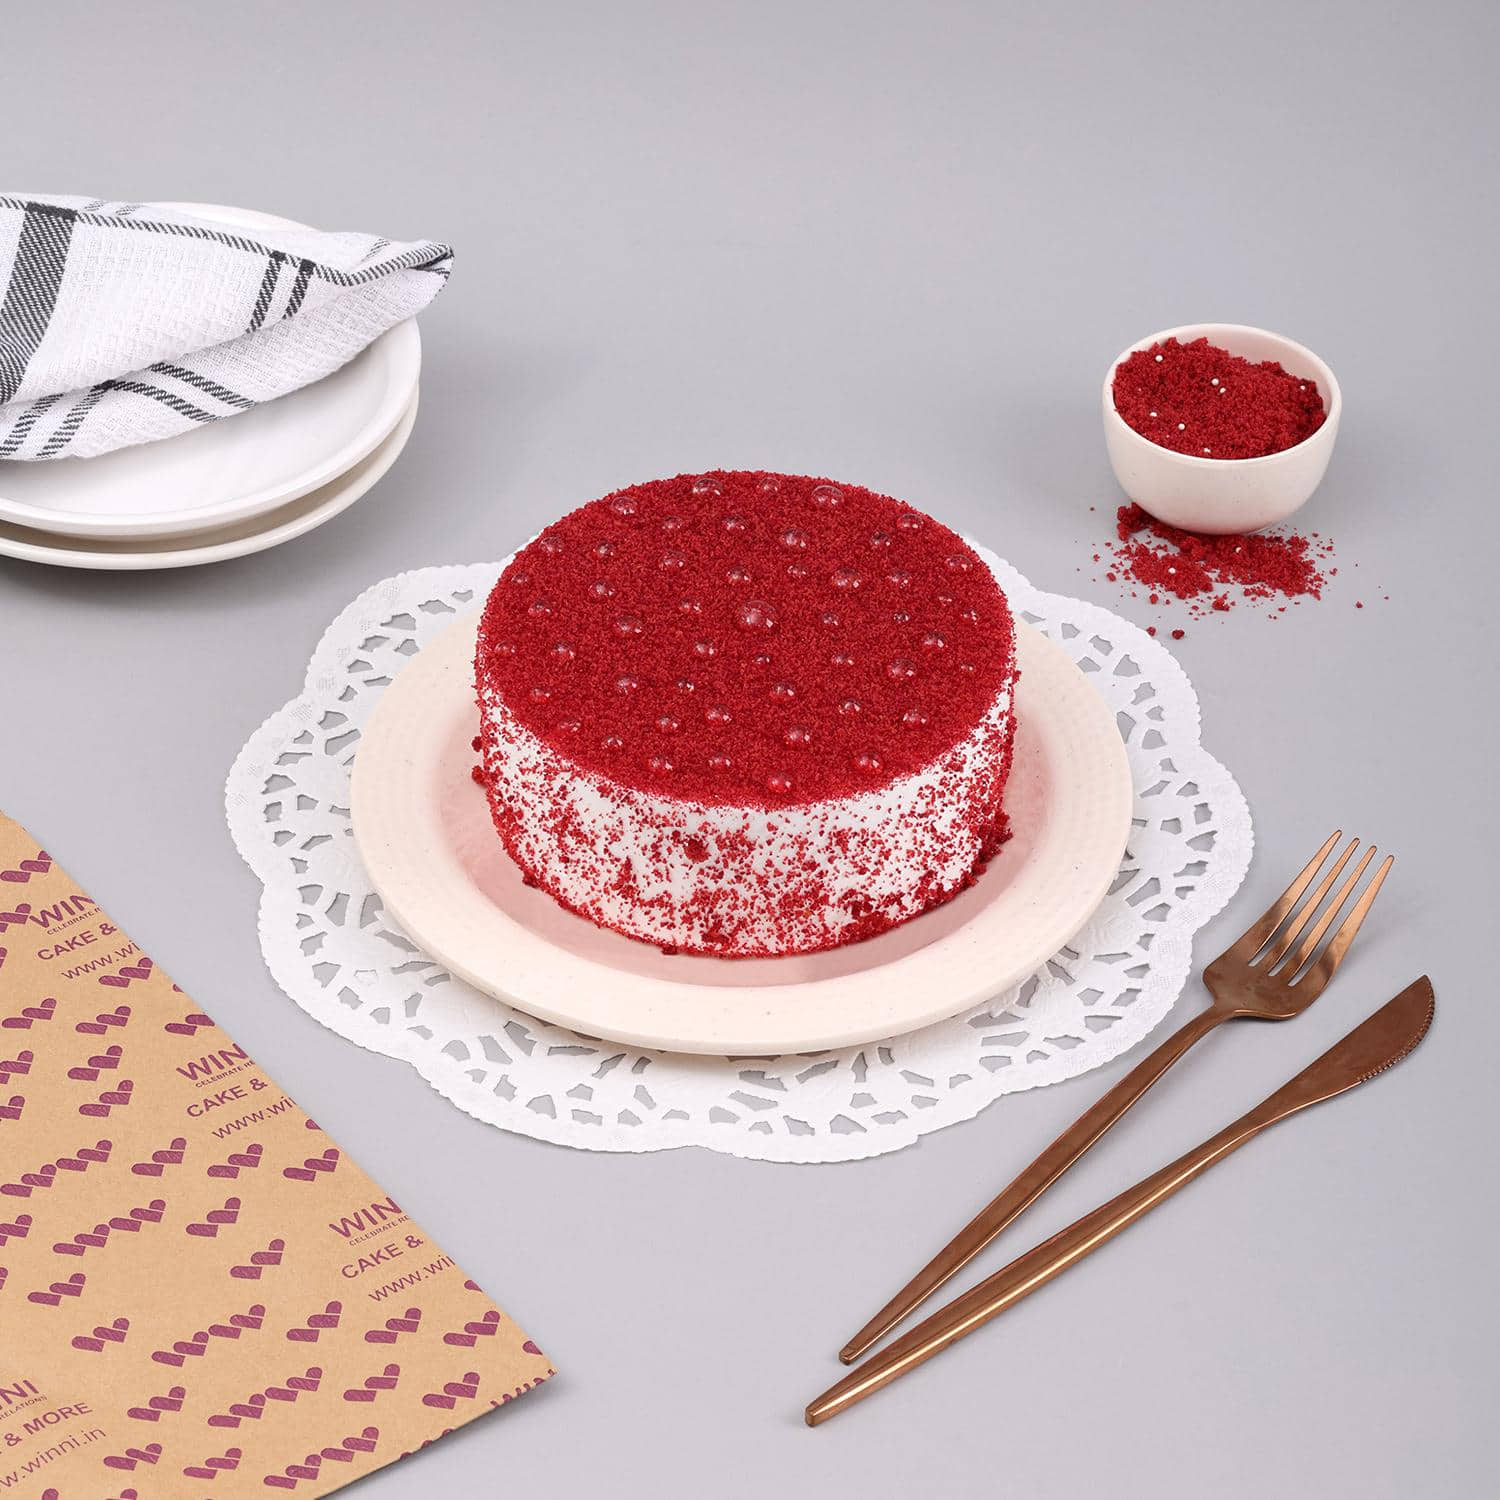 Easy Vegan Red Velvet Cake | Jessica in the Kitchen